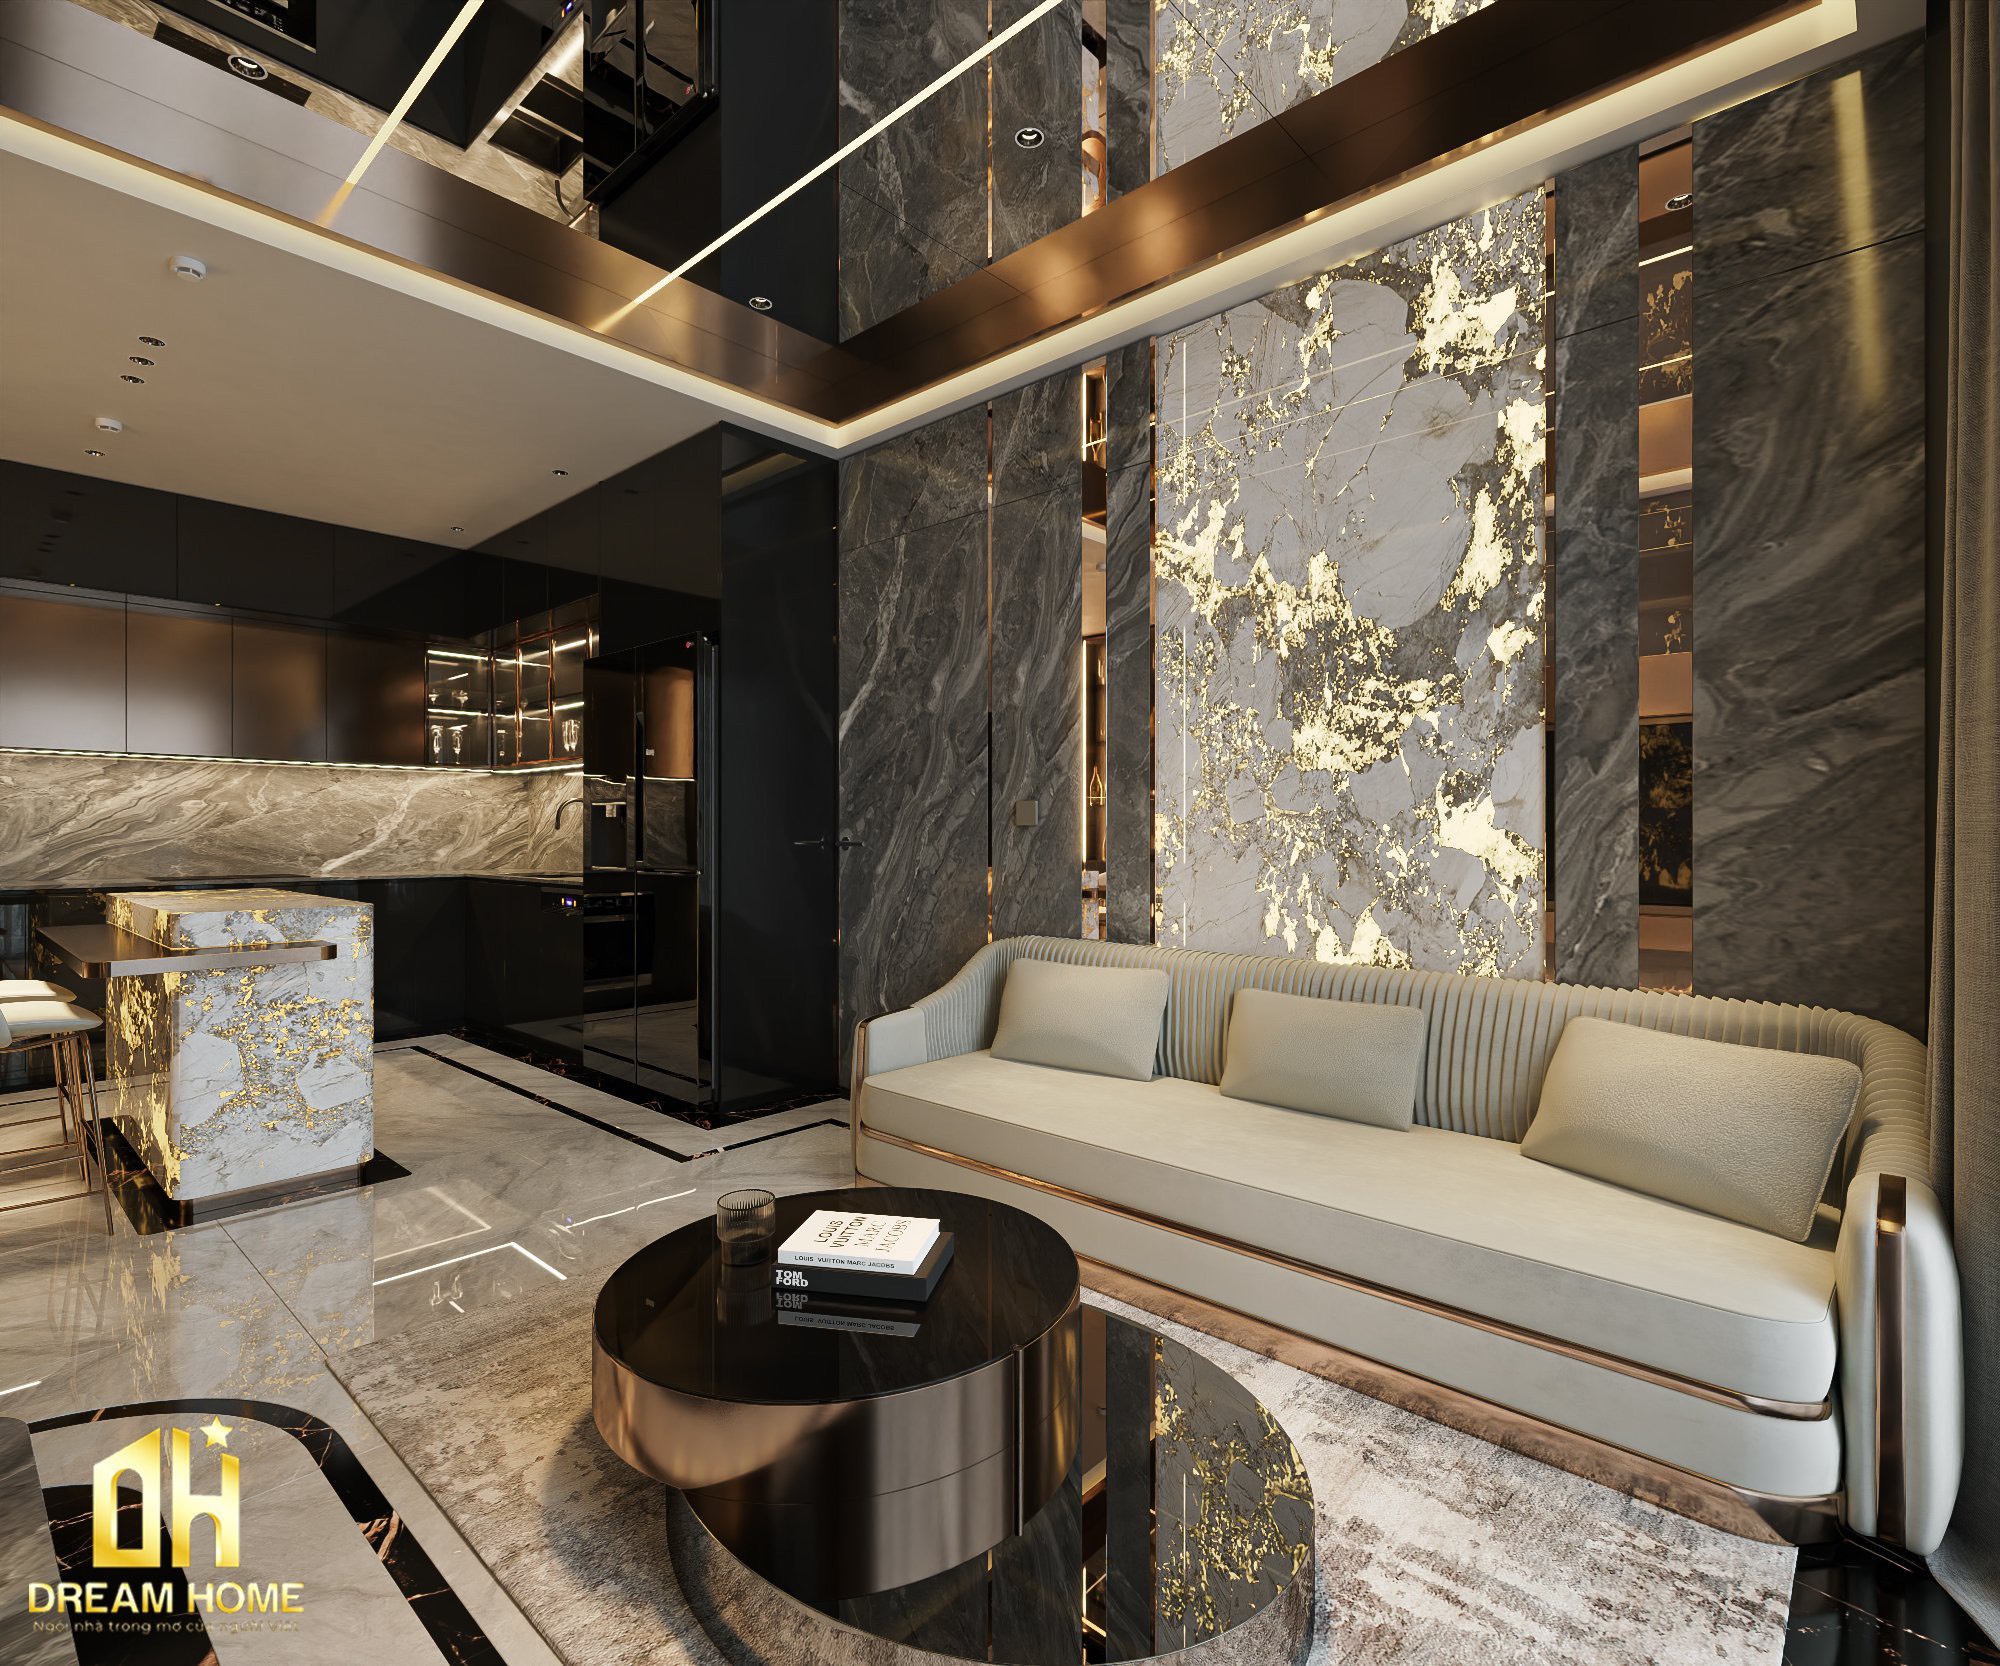 Phong cách thiết kế nội thất hiện đại và đá xuyên sáng tạo ra một không gian sống phong phú